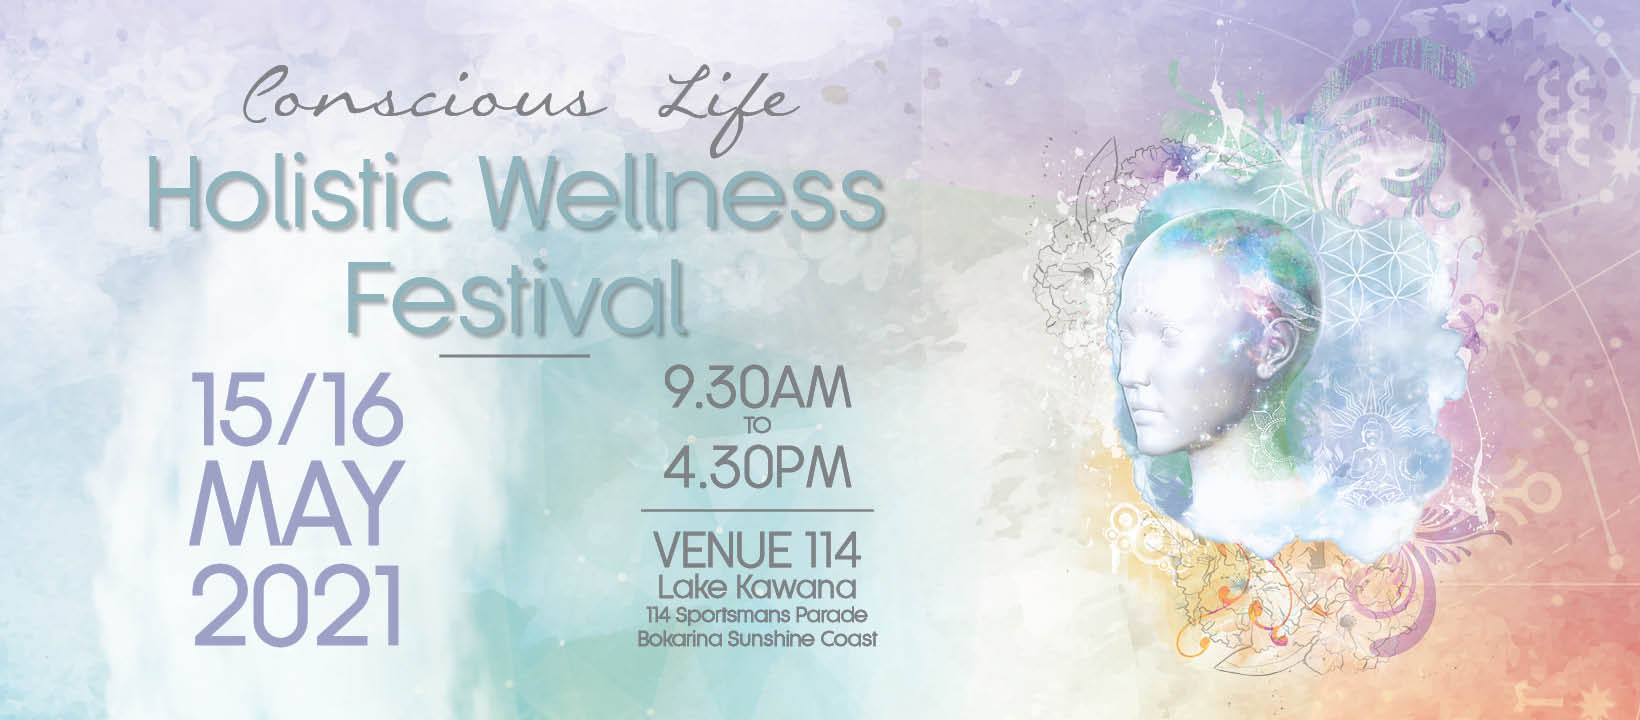 2021 conscious life holistic wellness festival